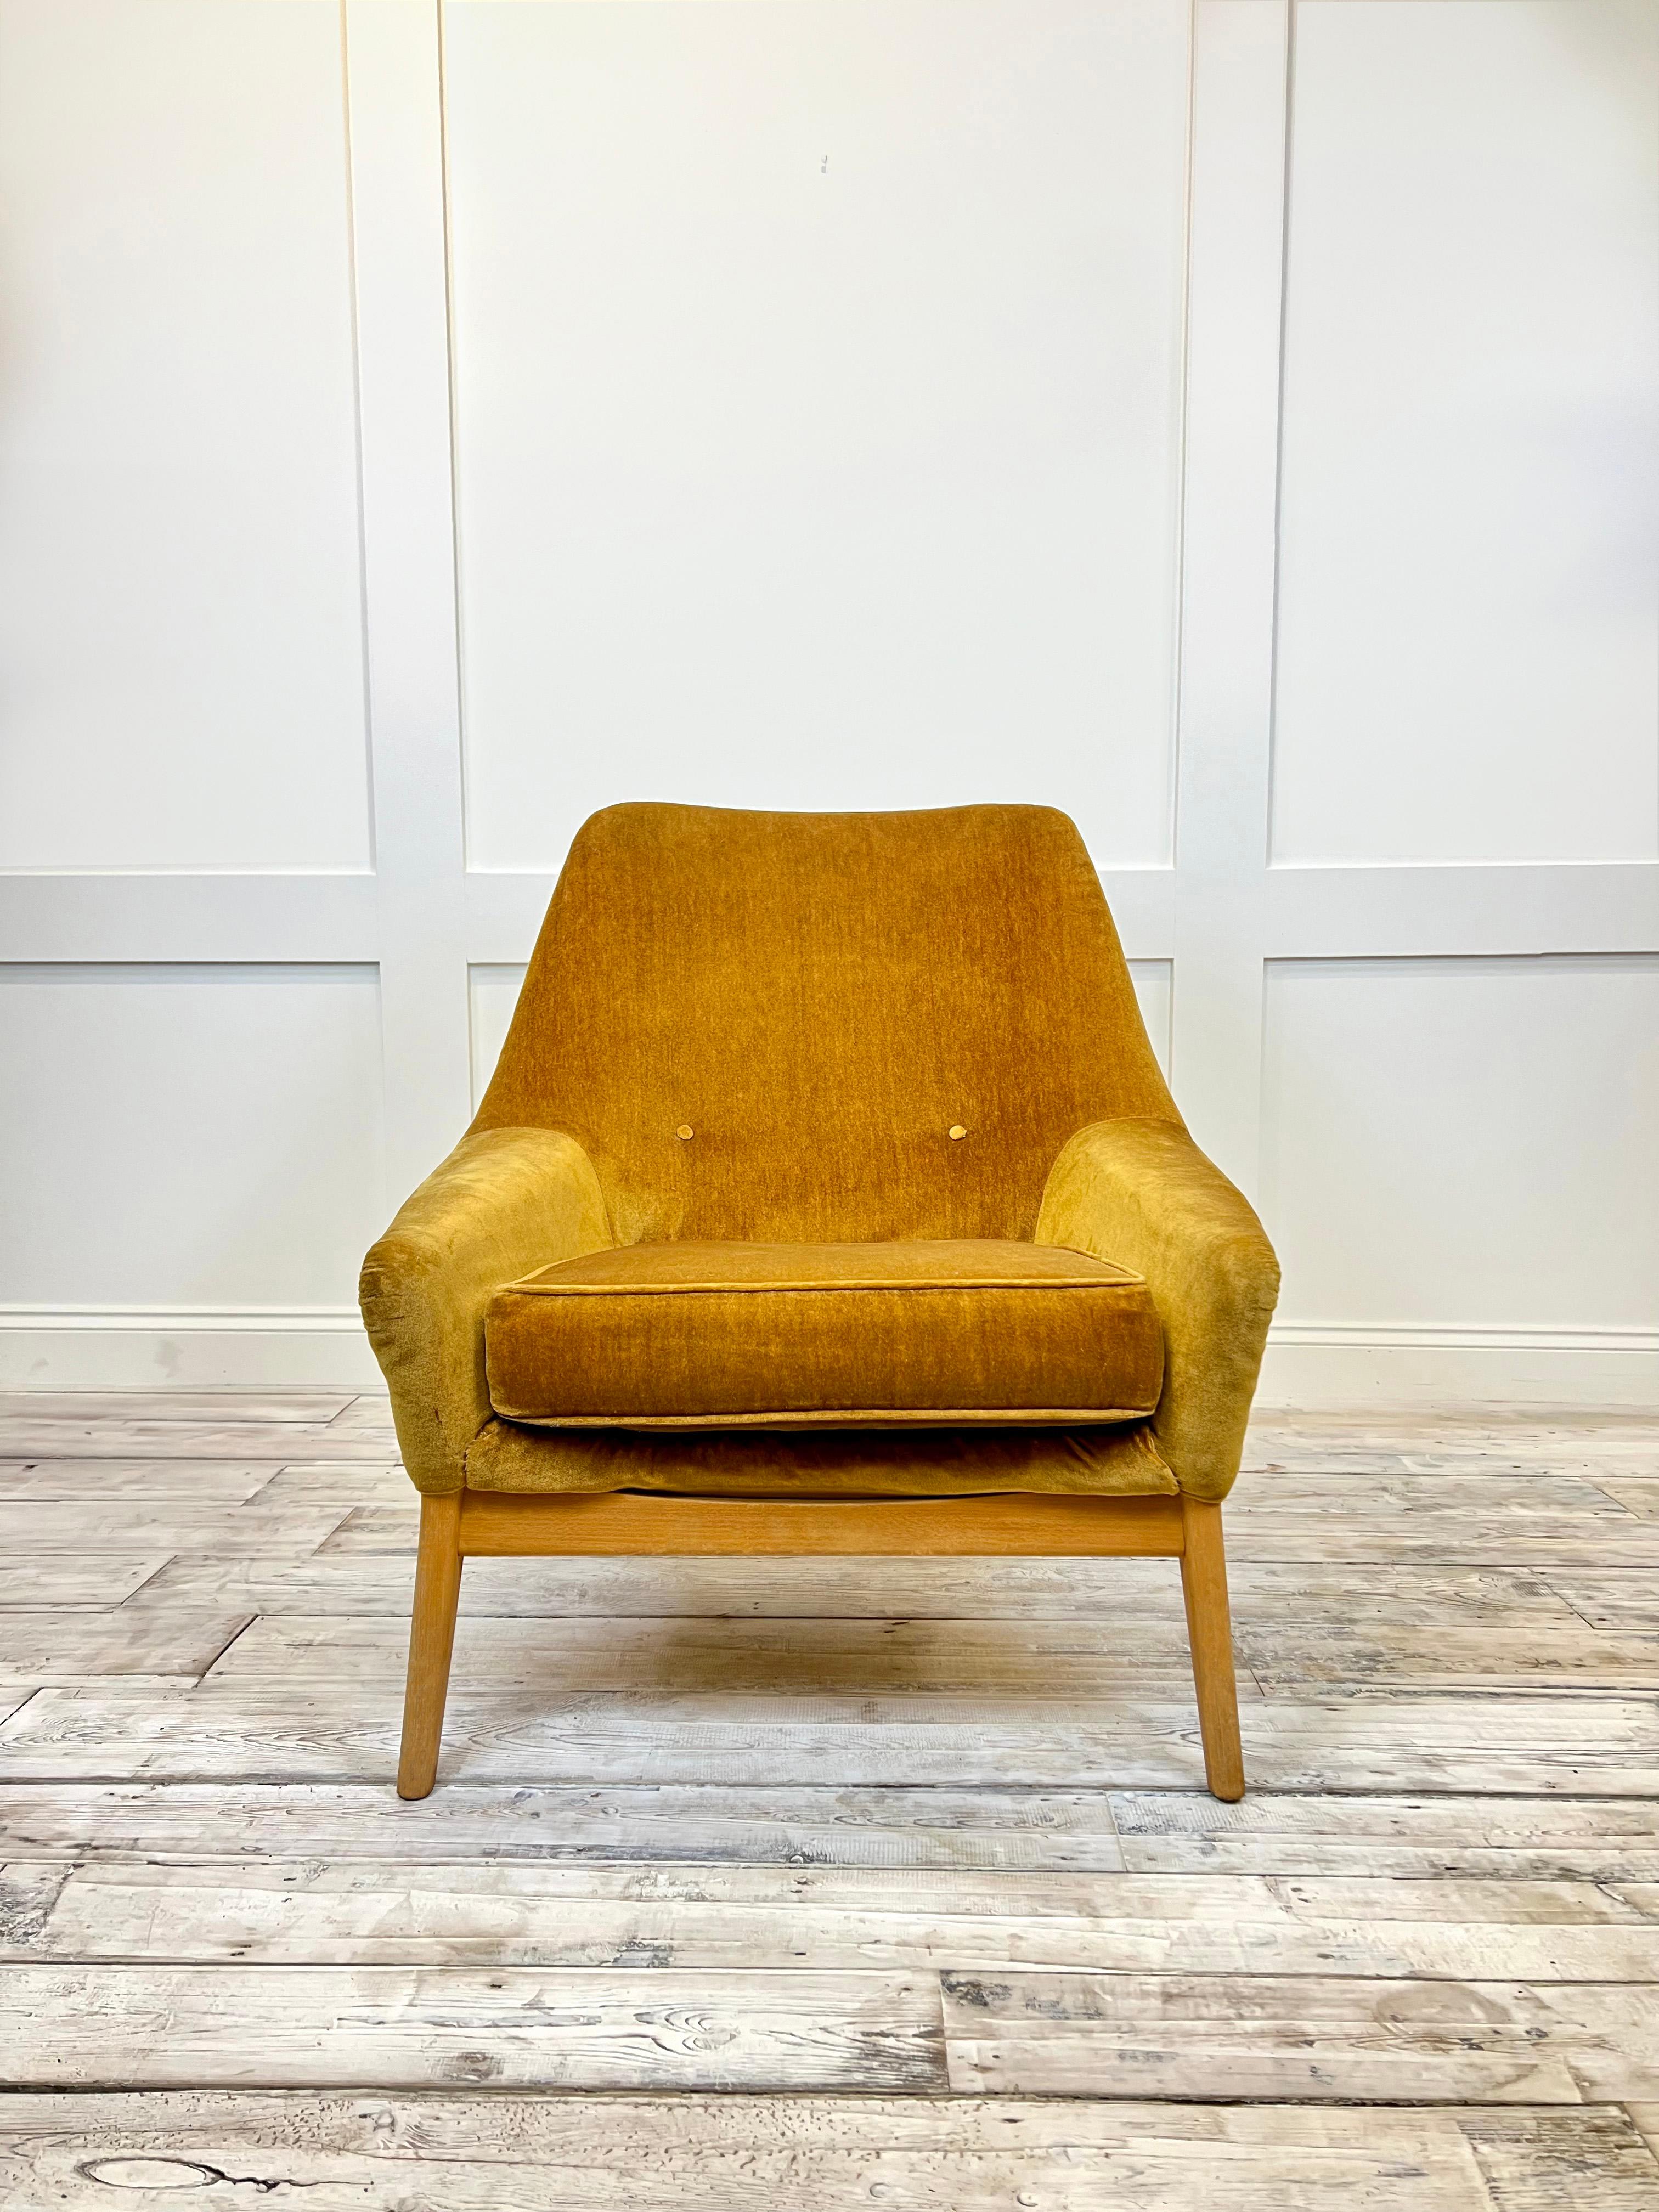 Cette chaise de salon emblématique du design britannique présente une agréable silhouette sculptée grâce à l'utilisation innovante de plastique moulé pour sa base en forme de coquille recouverte d'un magnifique revêtement en velours Honey Mustard.